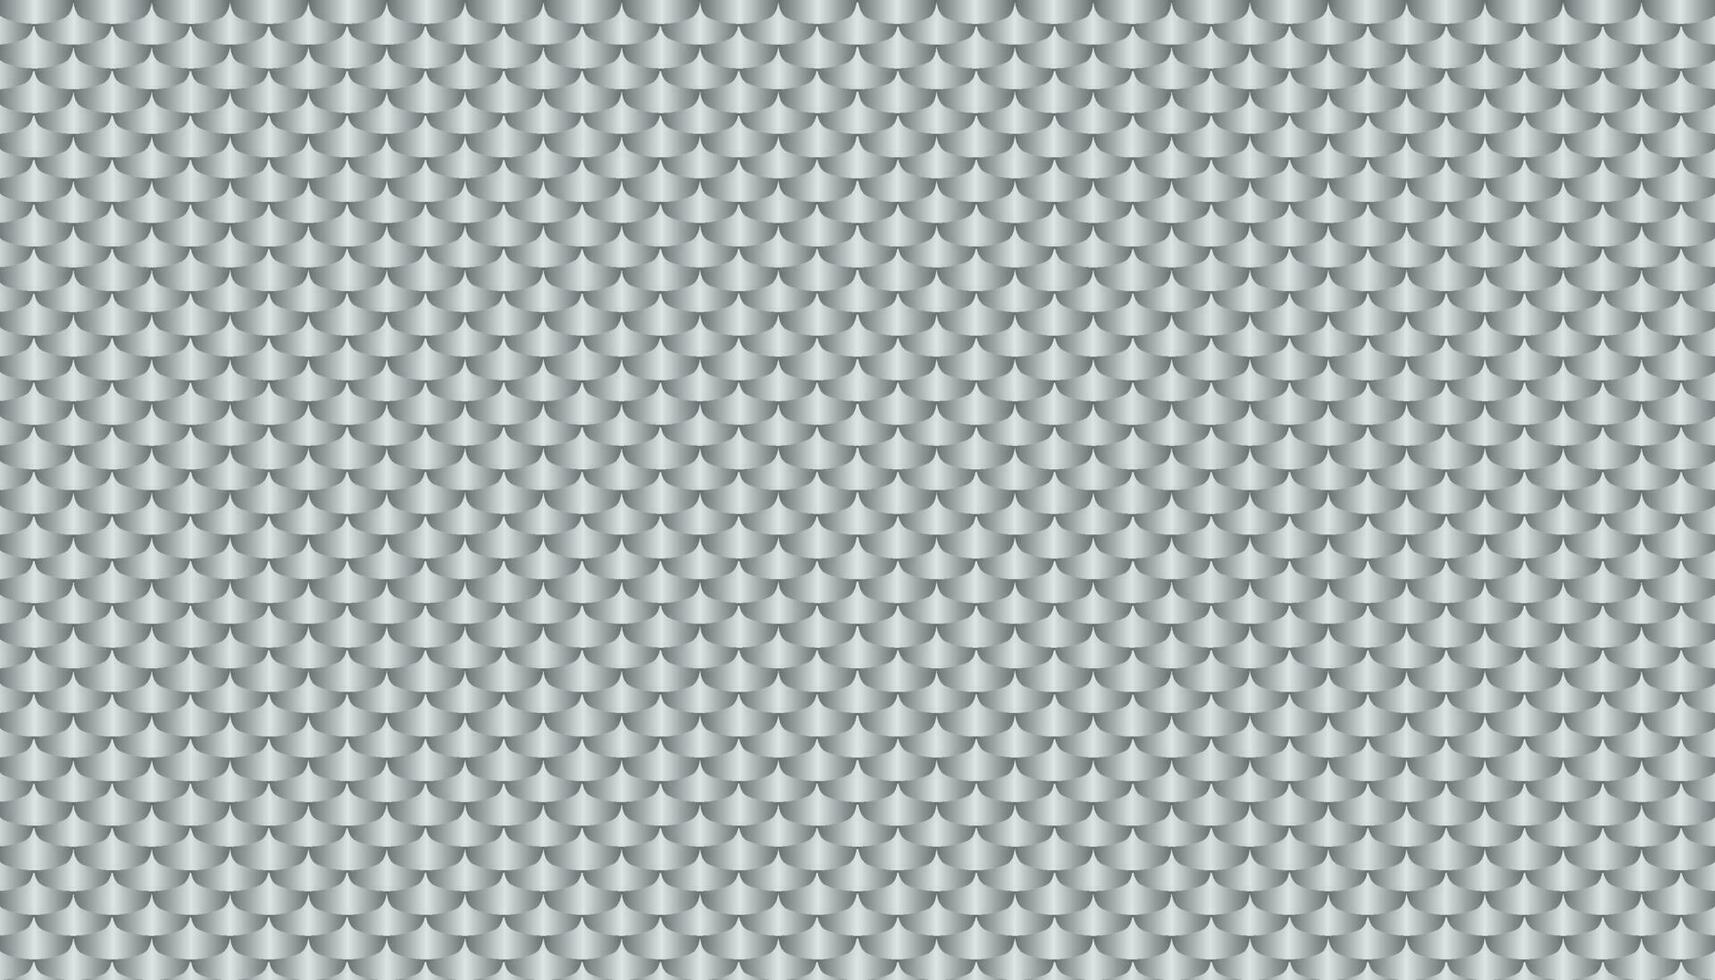 geborsteld metaal zilver, grijs vlok structuur naadloos virtueel achtergrond voor online conferenties, online uitzendingen. abstract ontwerp vector illustratie